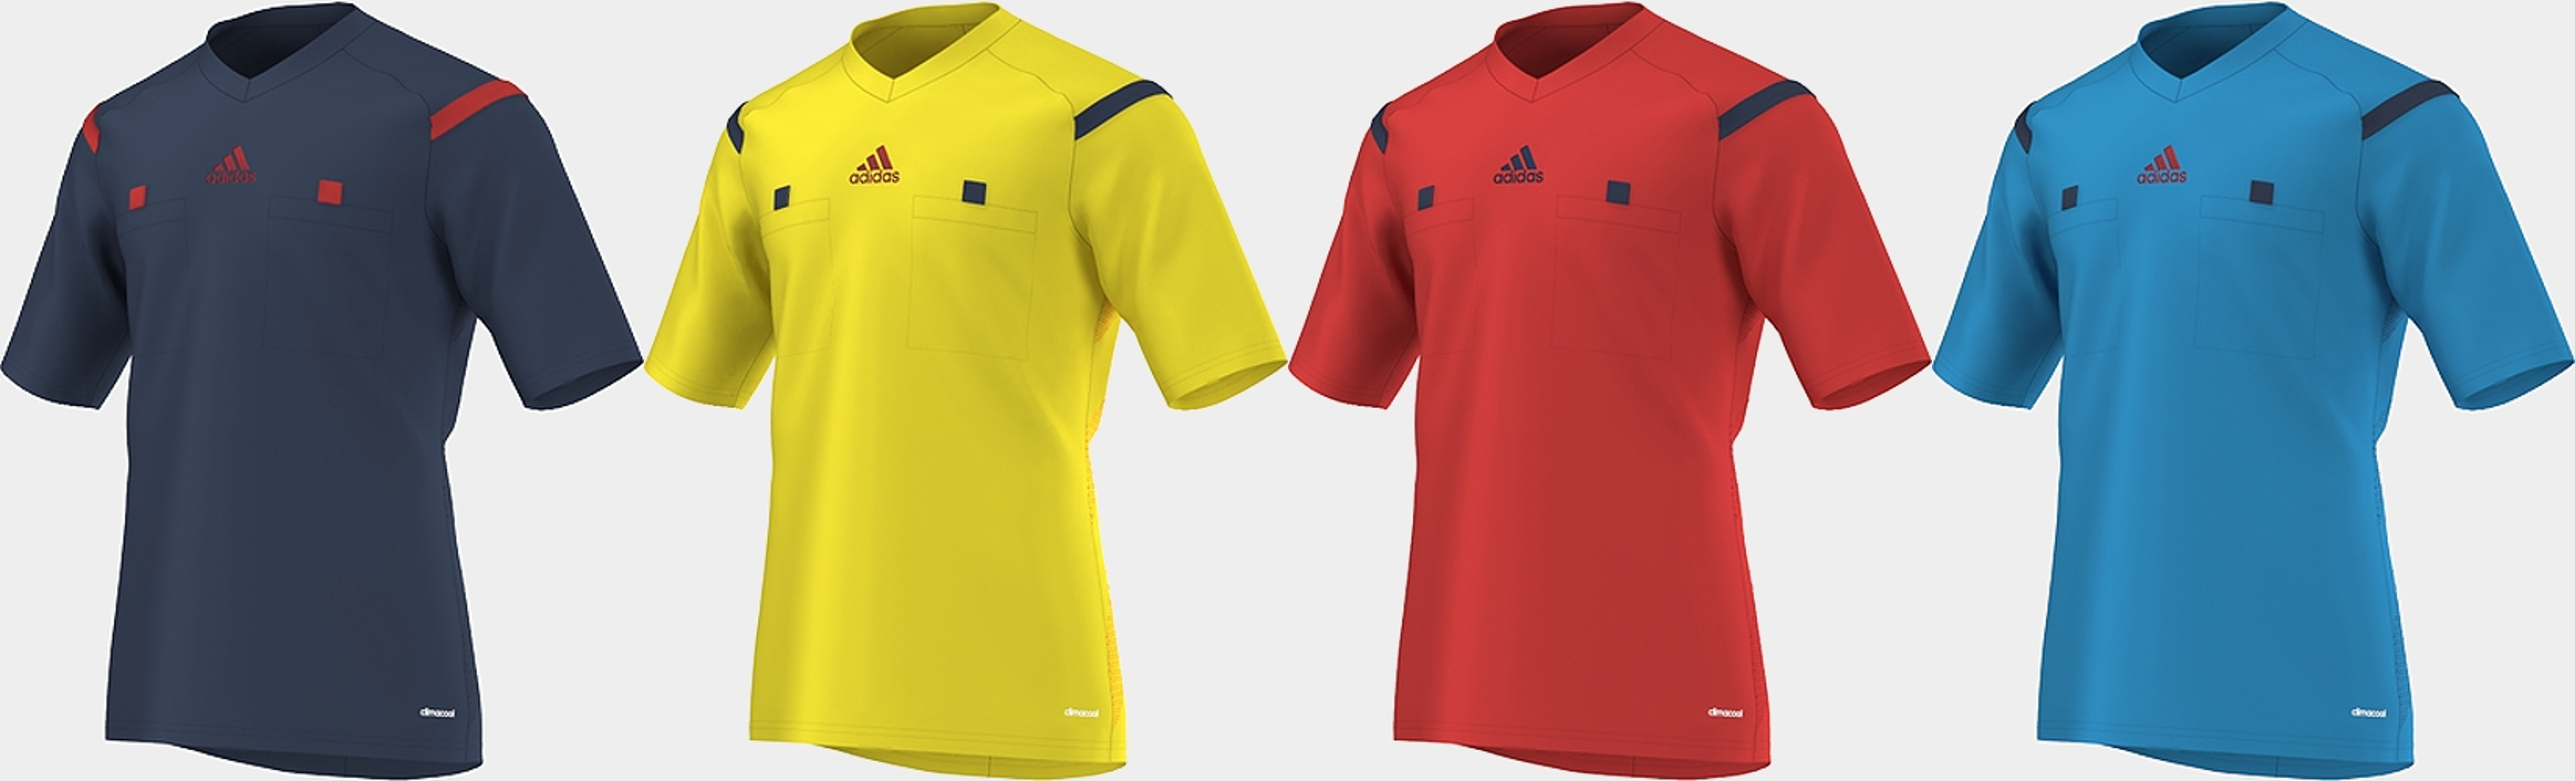 adidas 2010 referee shorts